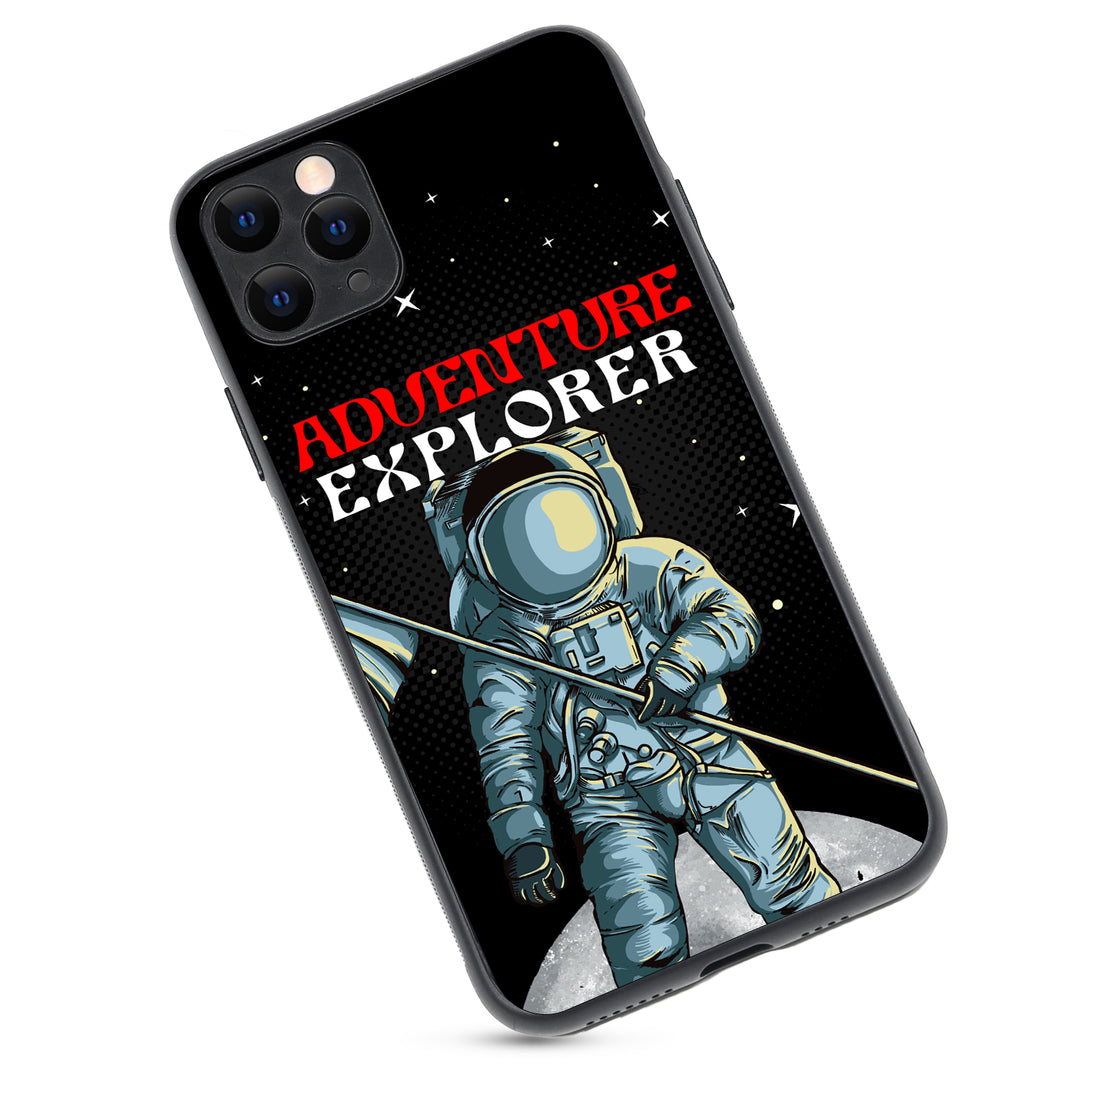 Adventure Explorer Space iPhone 11 Pro Max Case